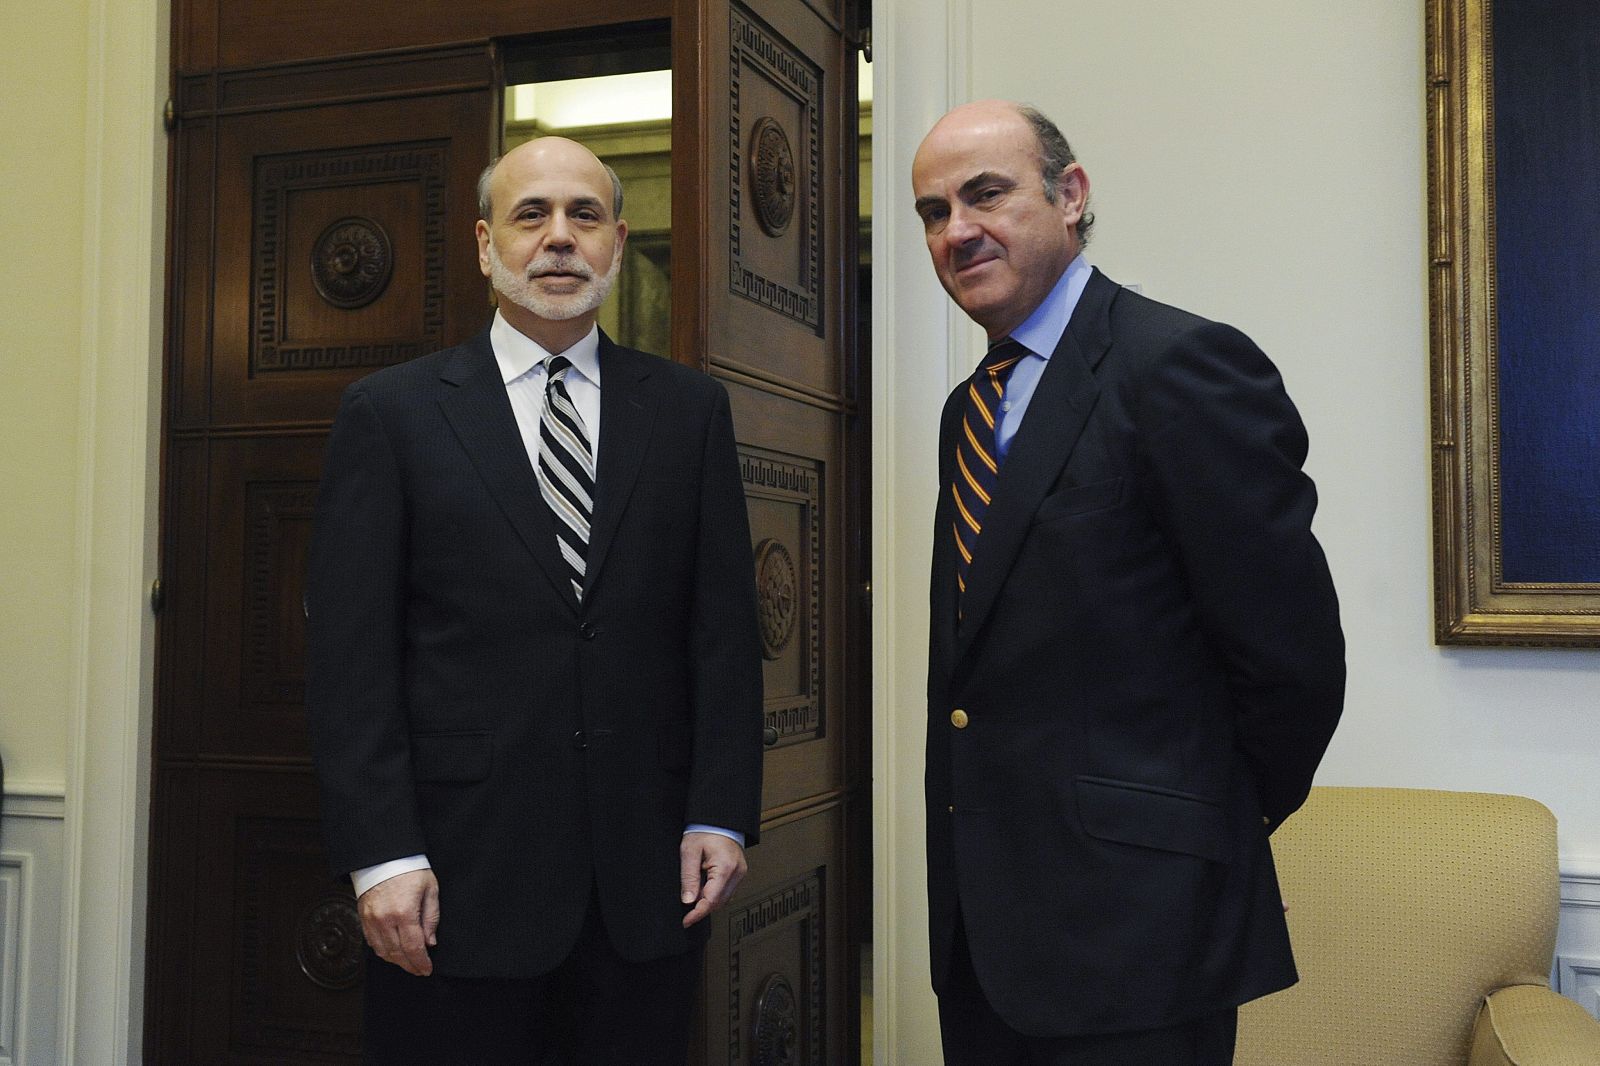 El ministro español de Economía y Competitividad, Luis de Guindos, se reúne con el presidente de la Reserva Federal, Ben Bernanke